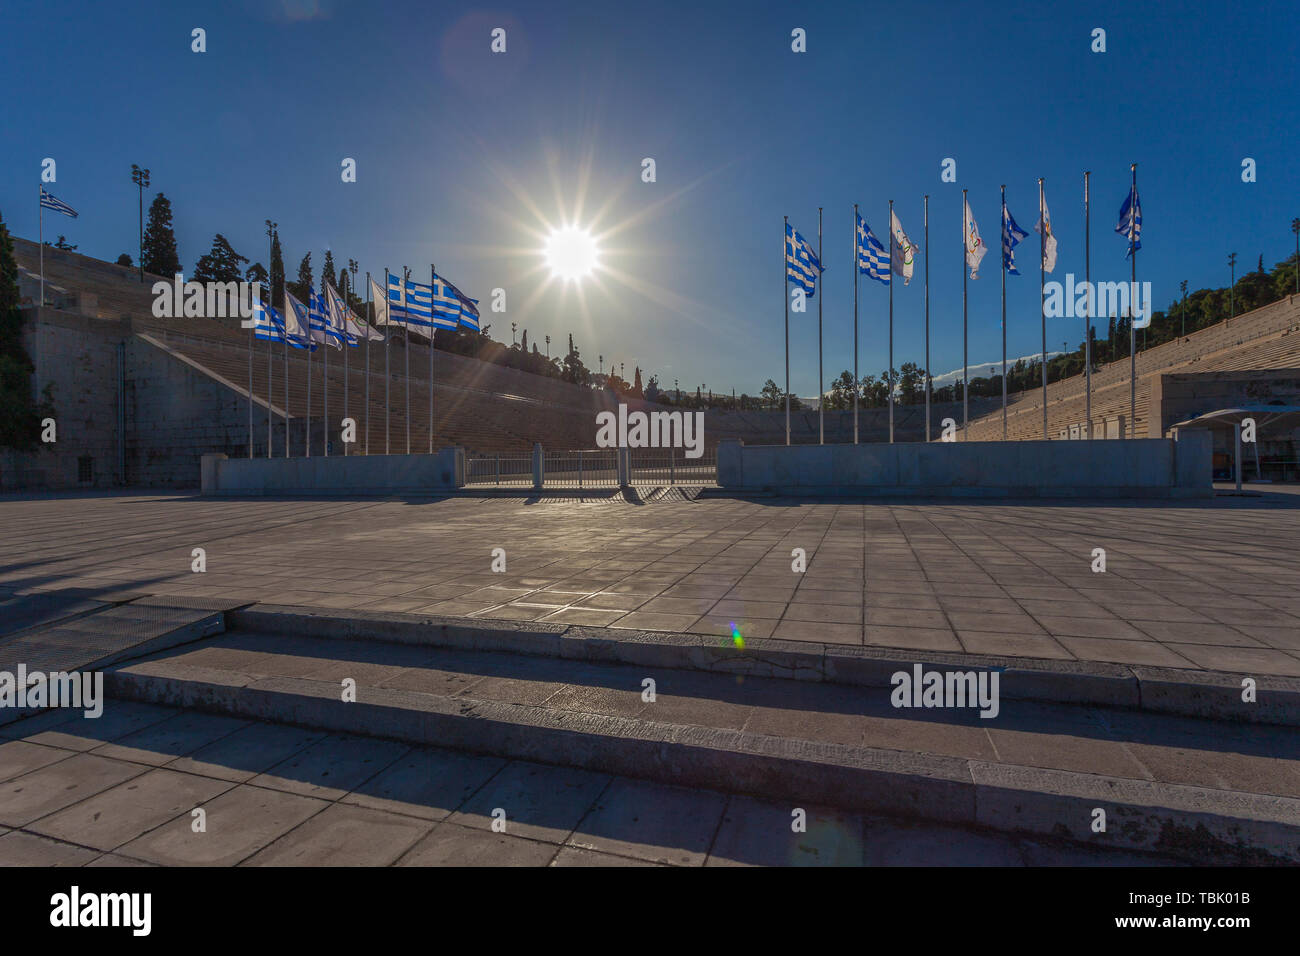 Athènes, Grèce - 25 octobre 2018 : Stade Panathinaiko avec la Grèce et drapeaux olympiques Banque D'Images